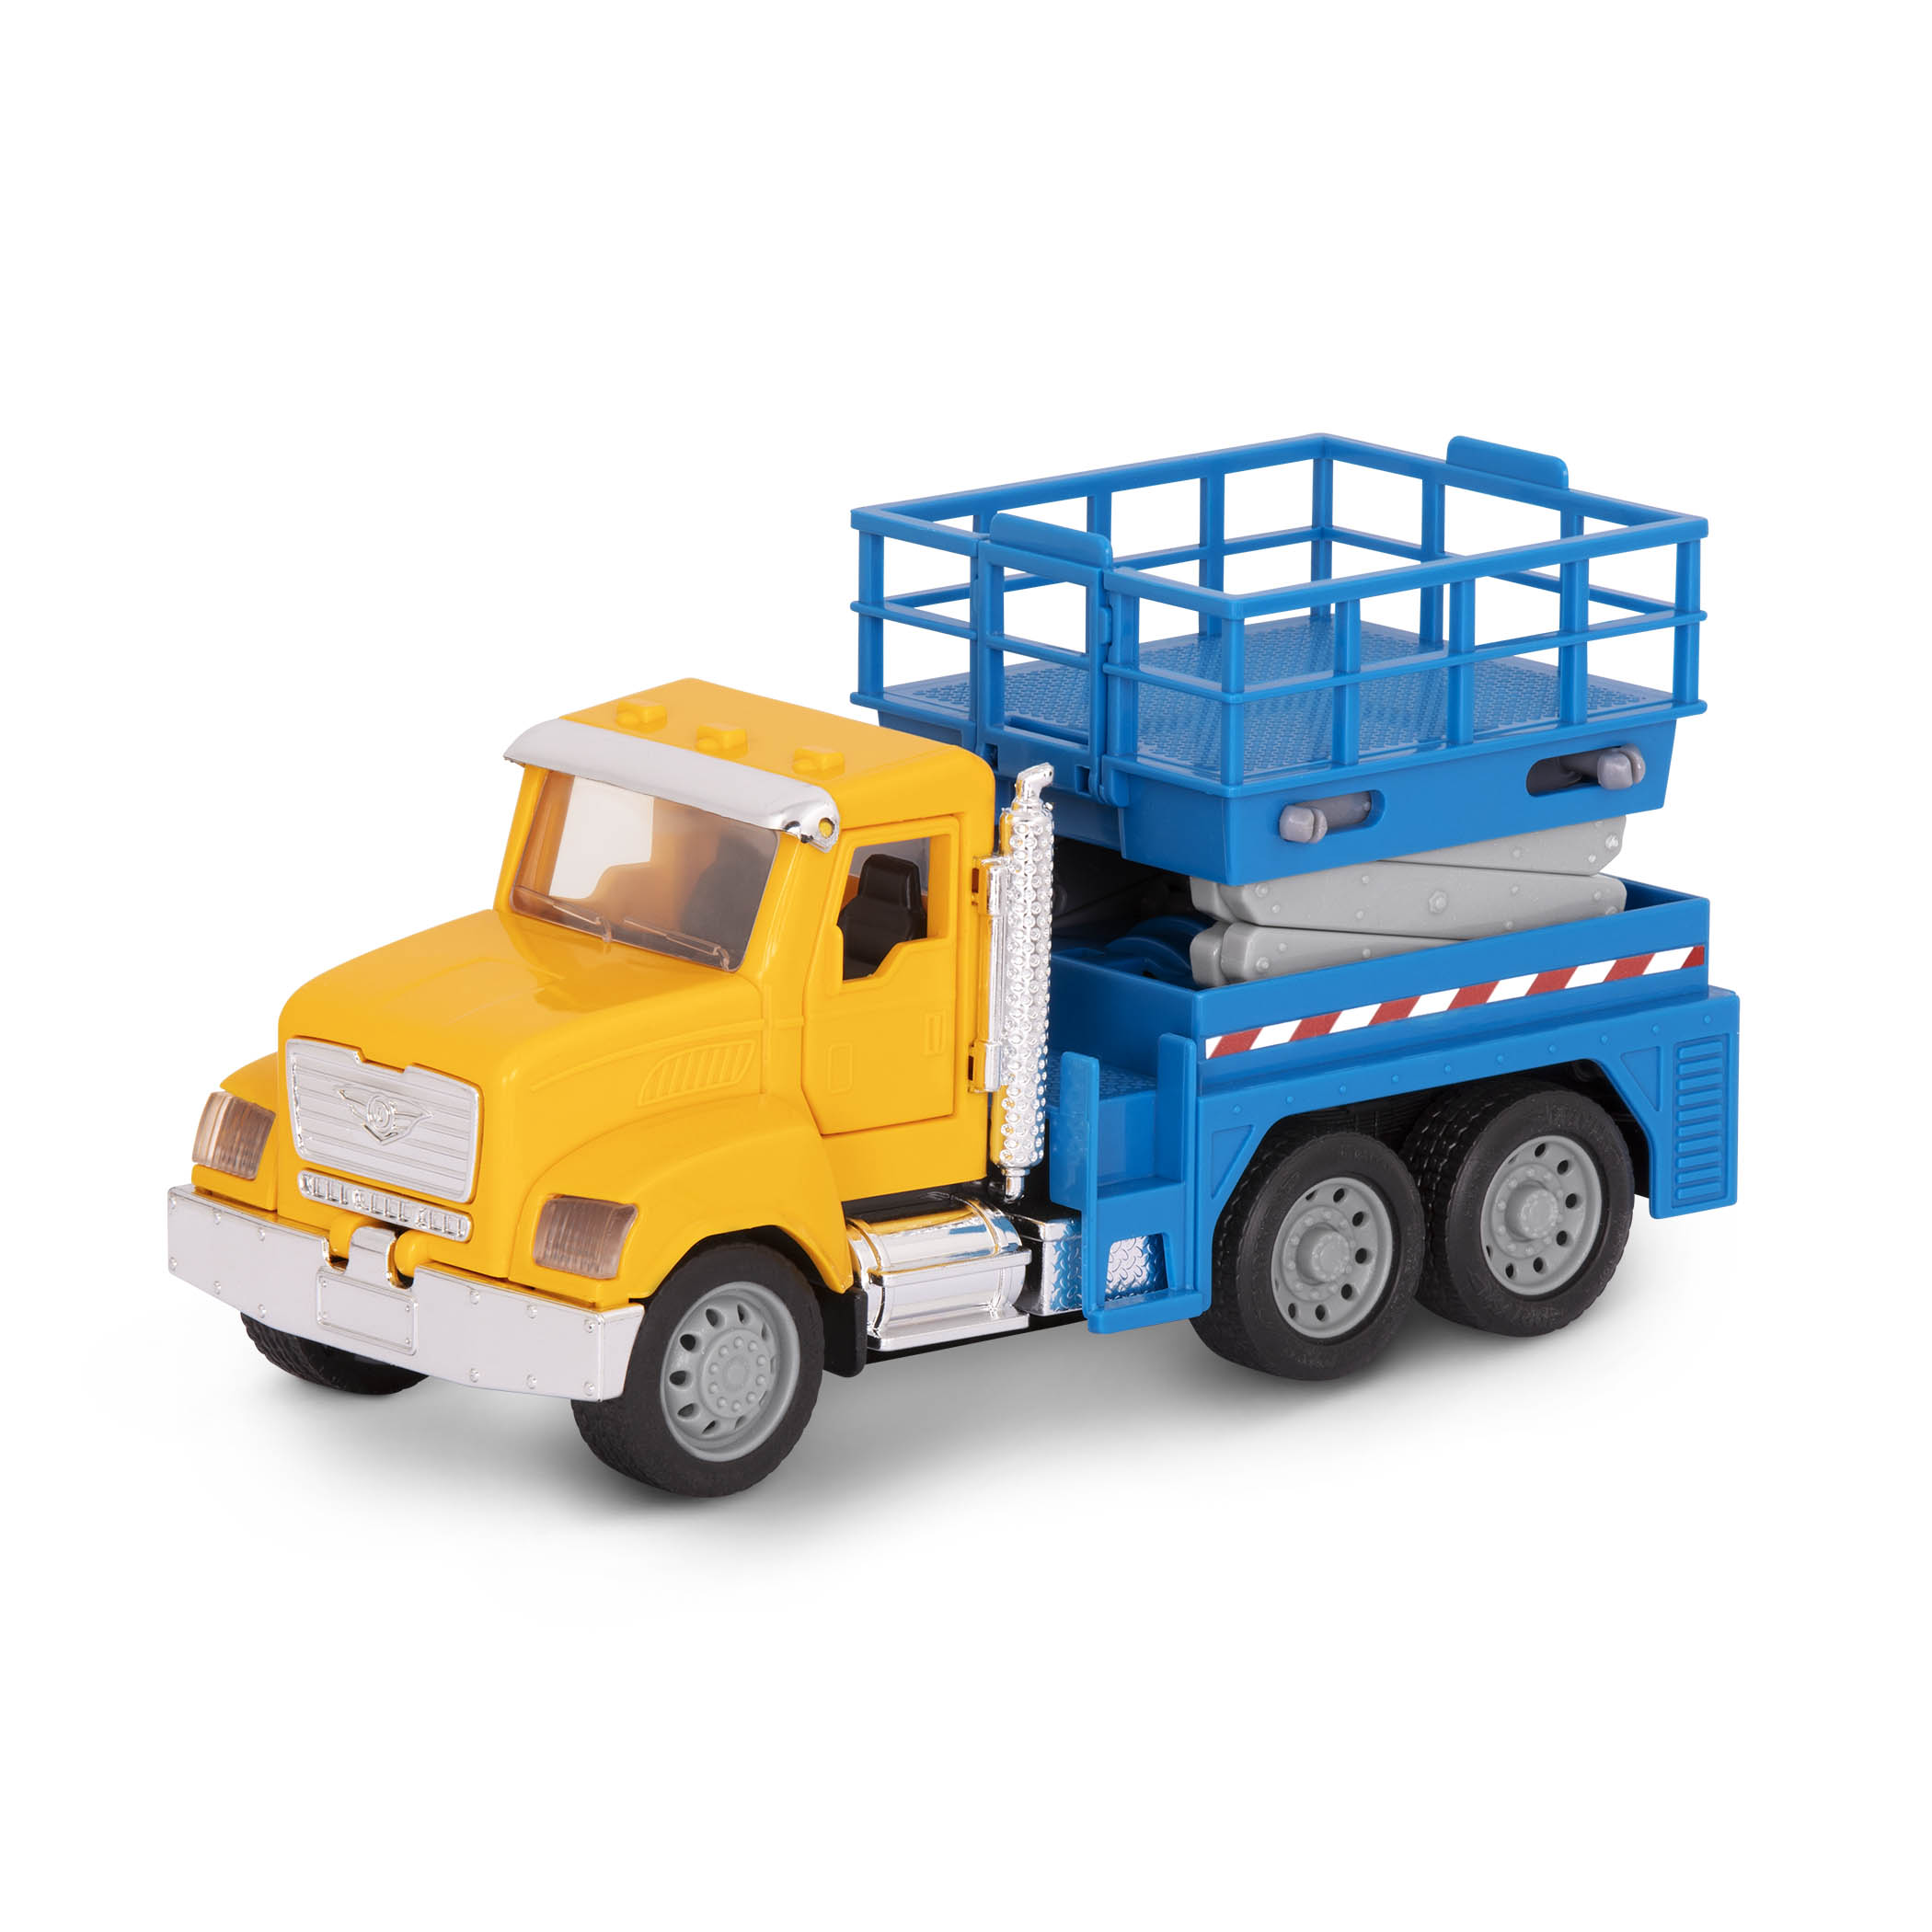 Micro Scissor Lift Truck Small Toy